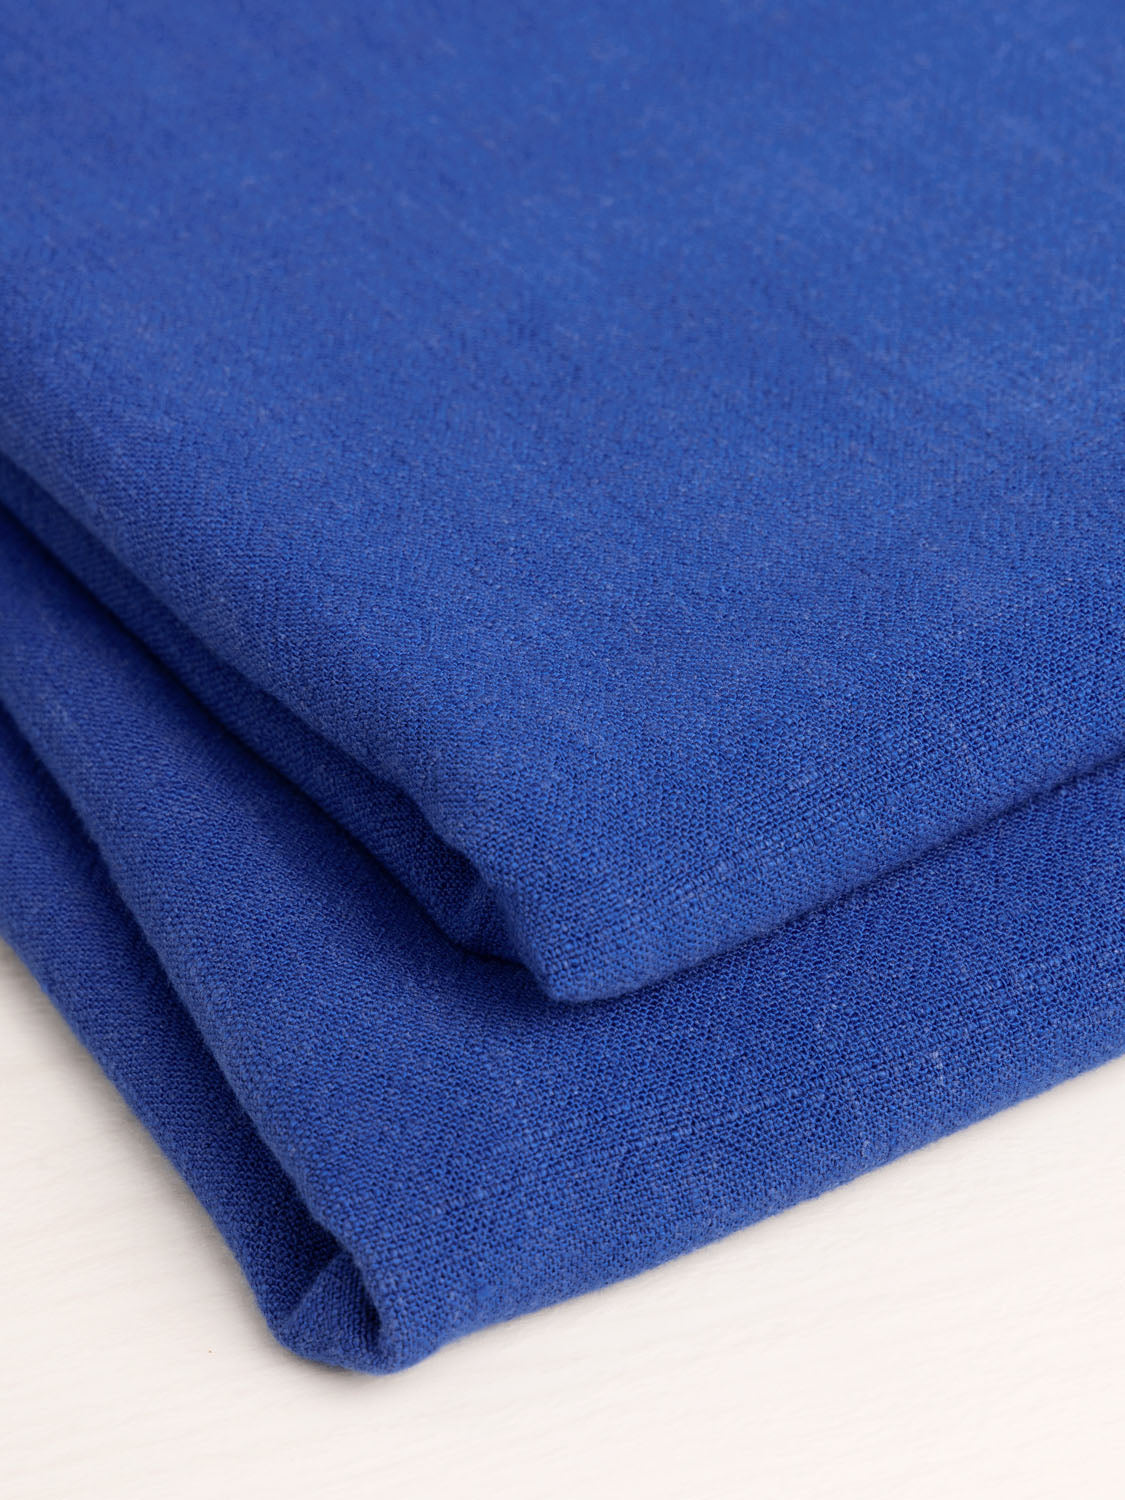 Blue fine linen fabric, 100% linen